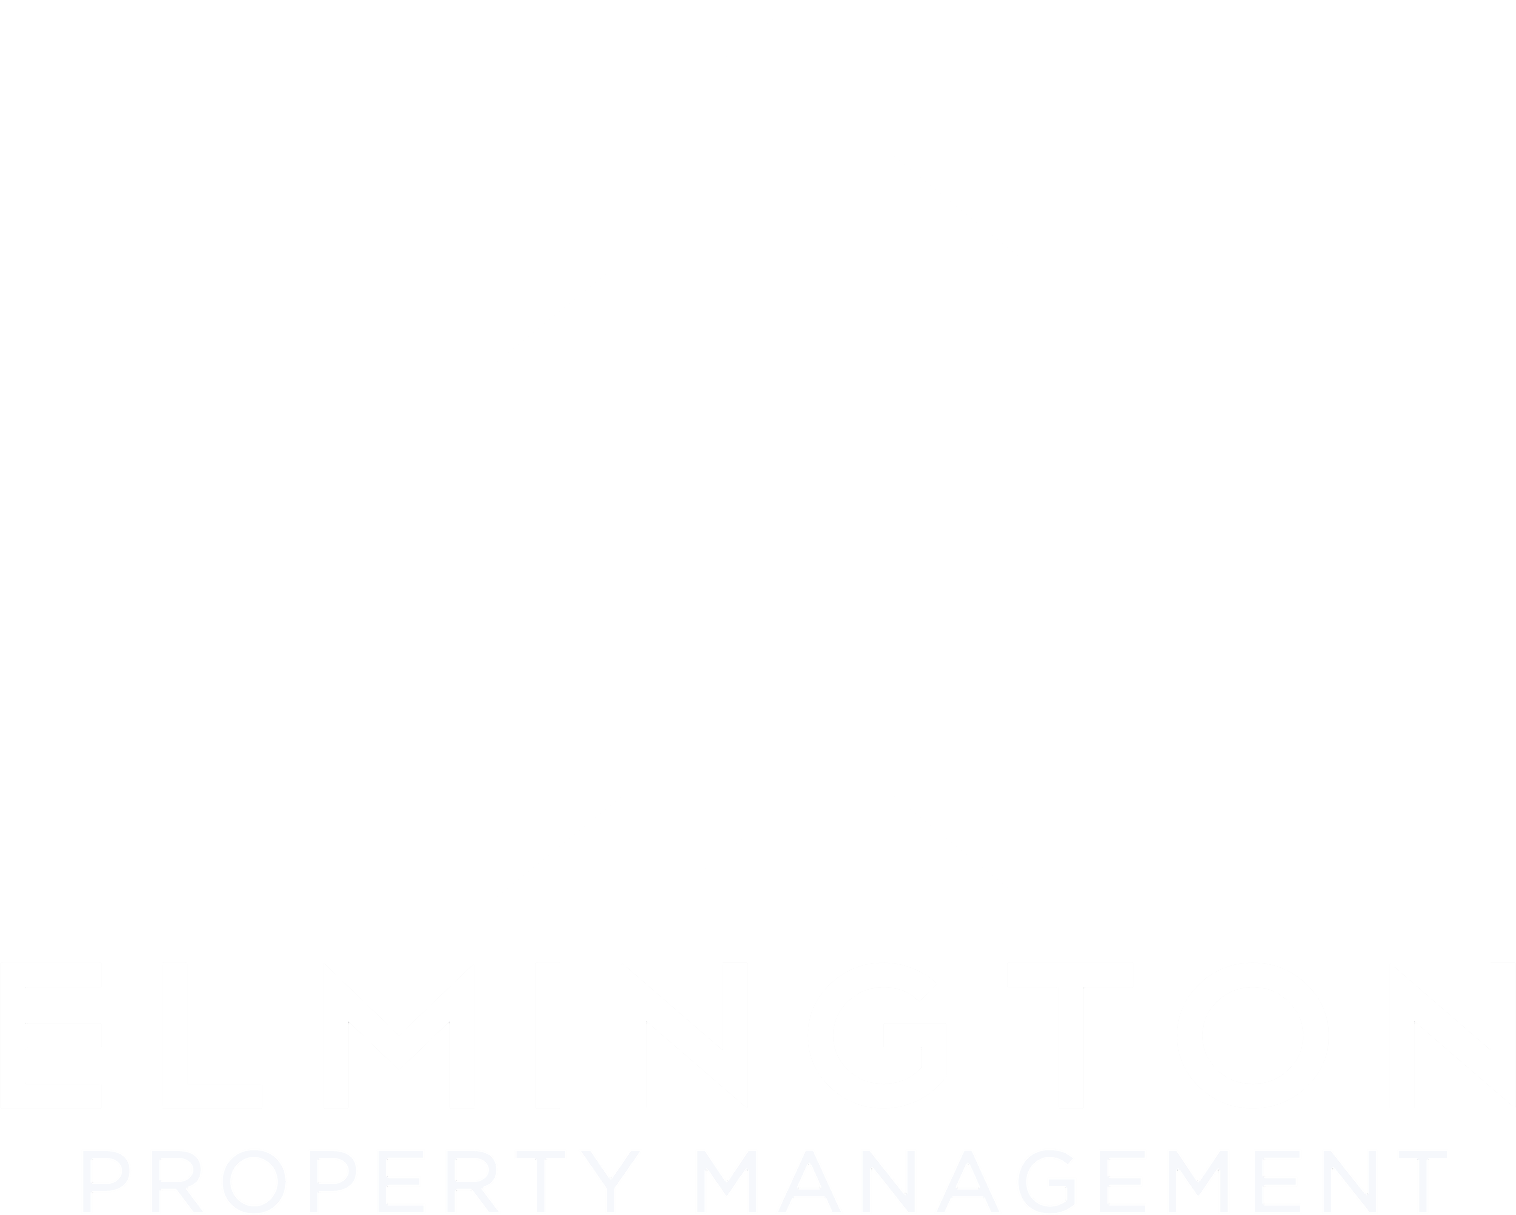 Elmington Property Management